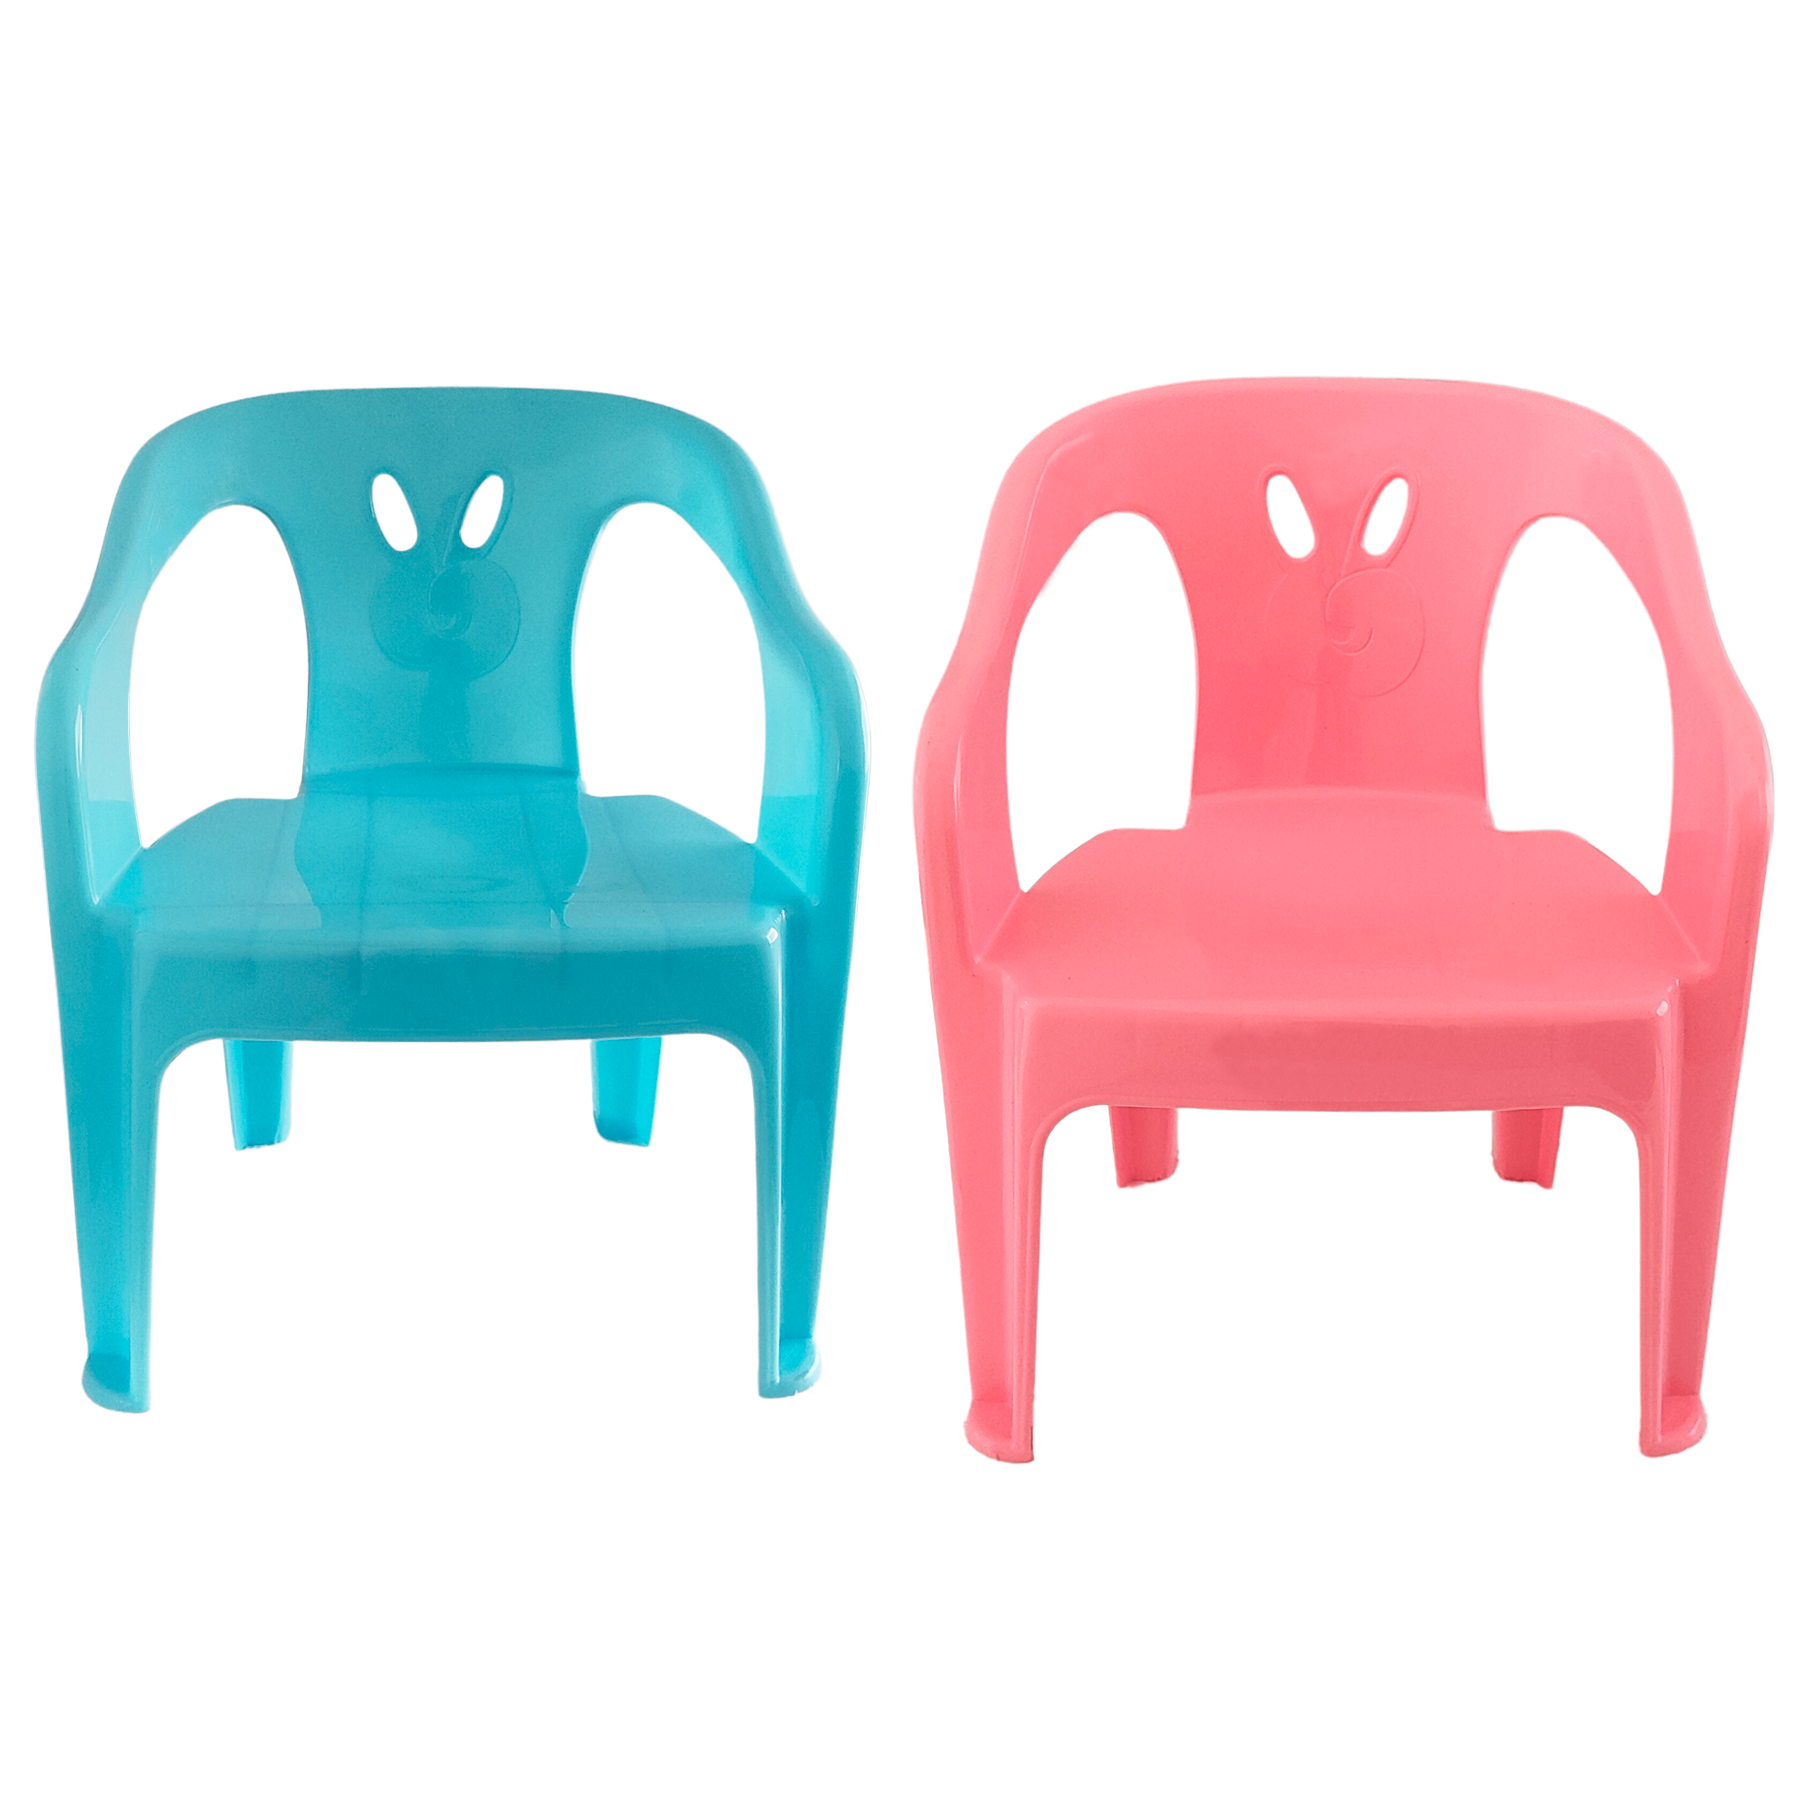 2 Cadeiras Mini Poltrona Infantil de Plástico Rosa e Azul